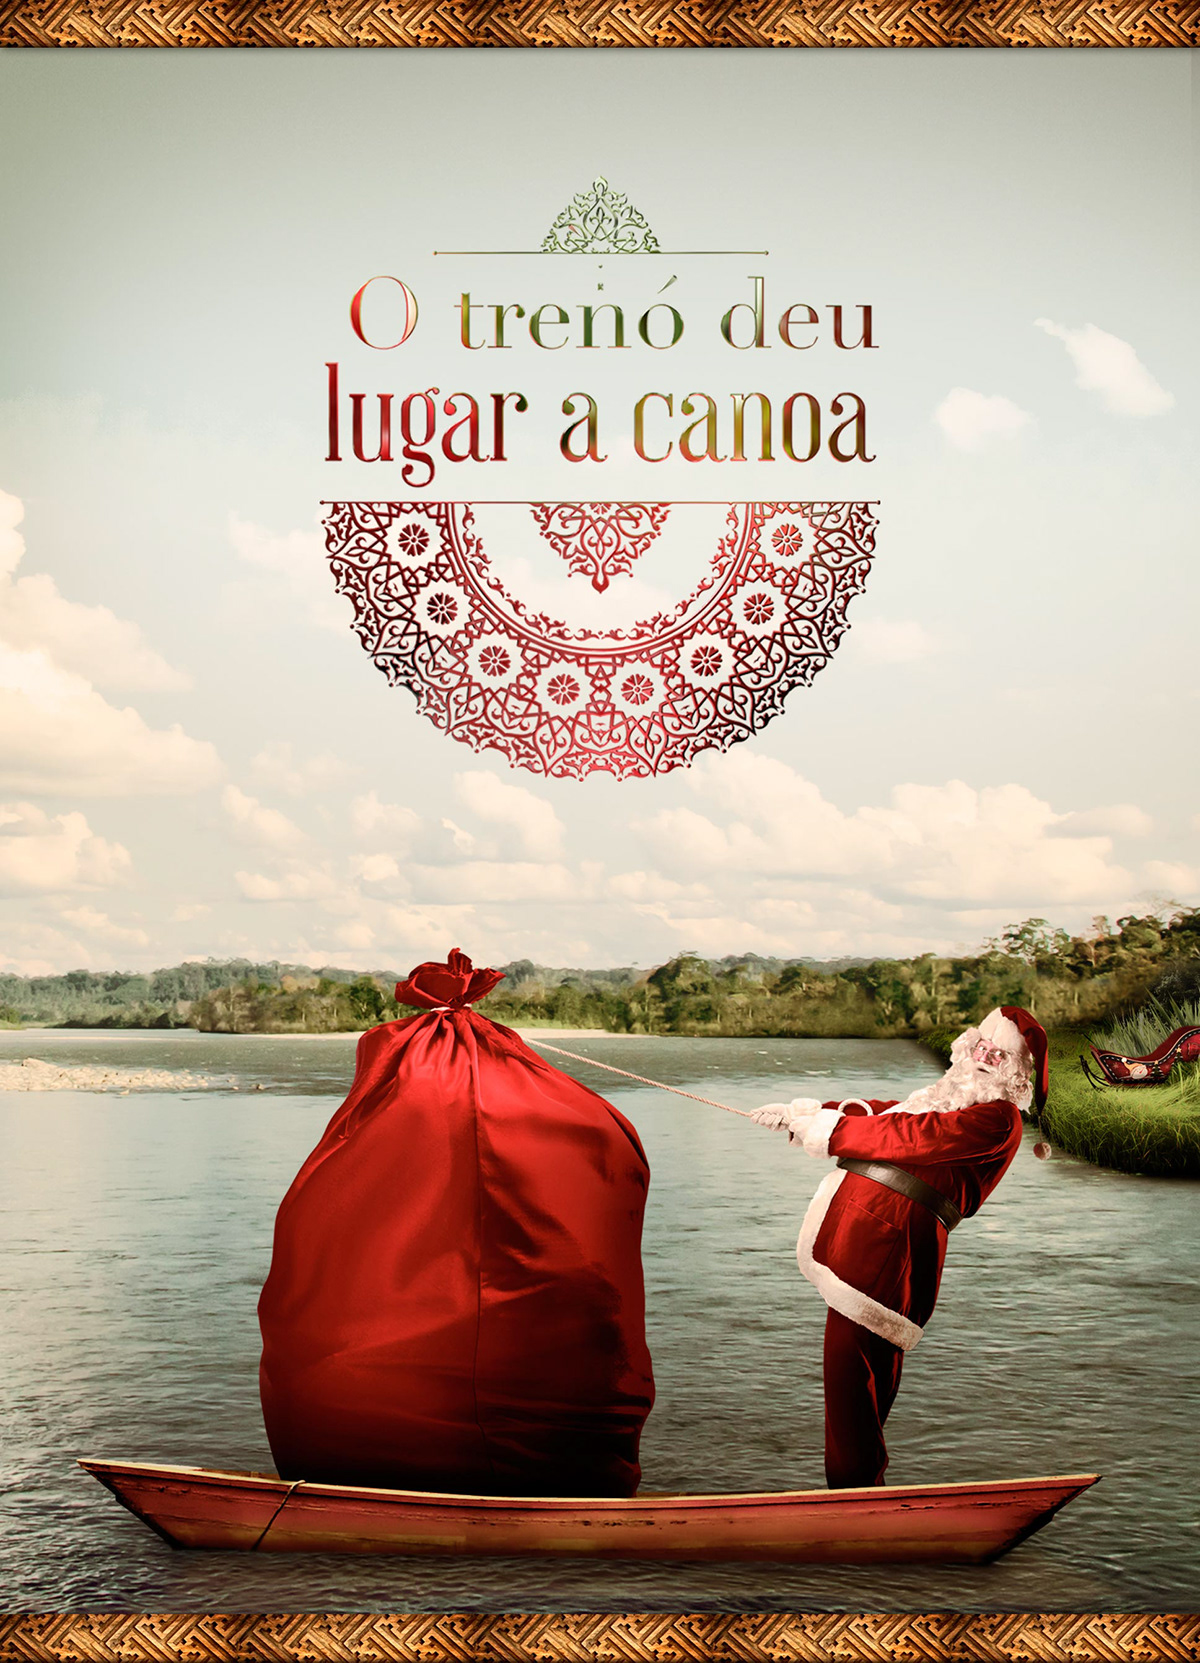 Christmas natal Papai Noel amazonia regional river rio